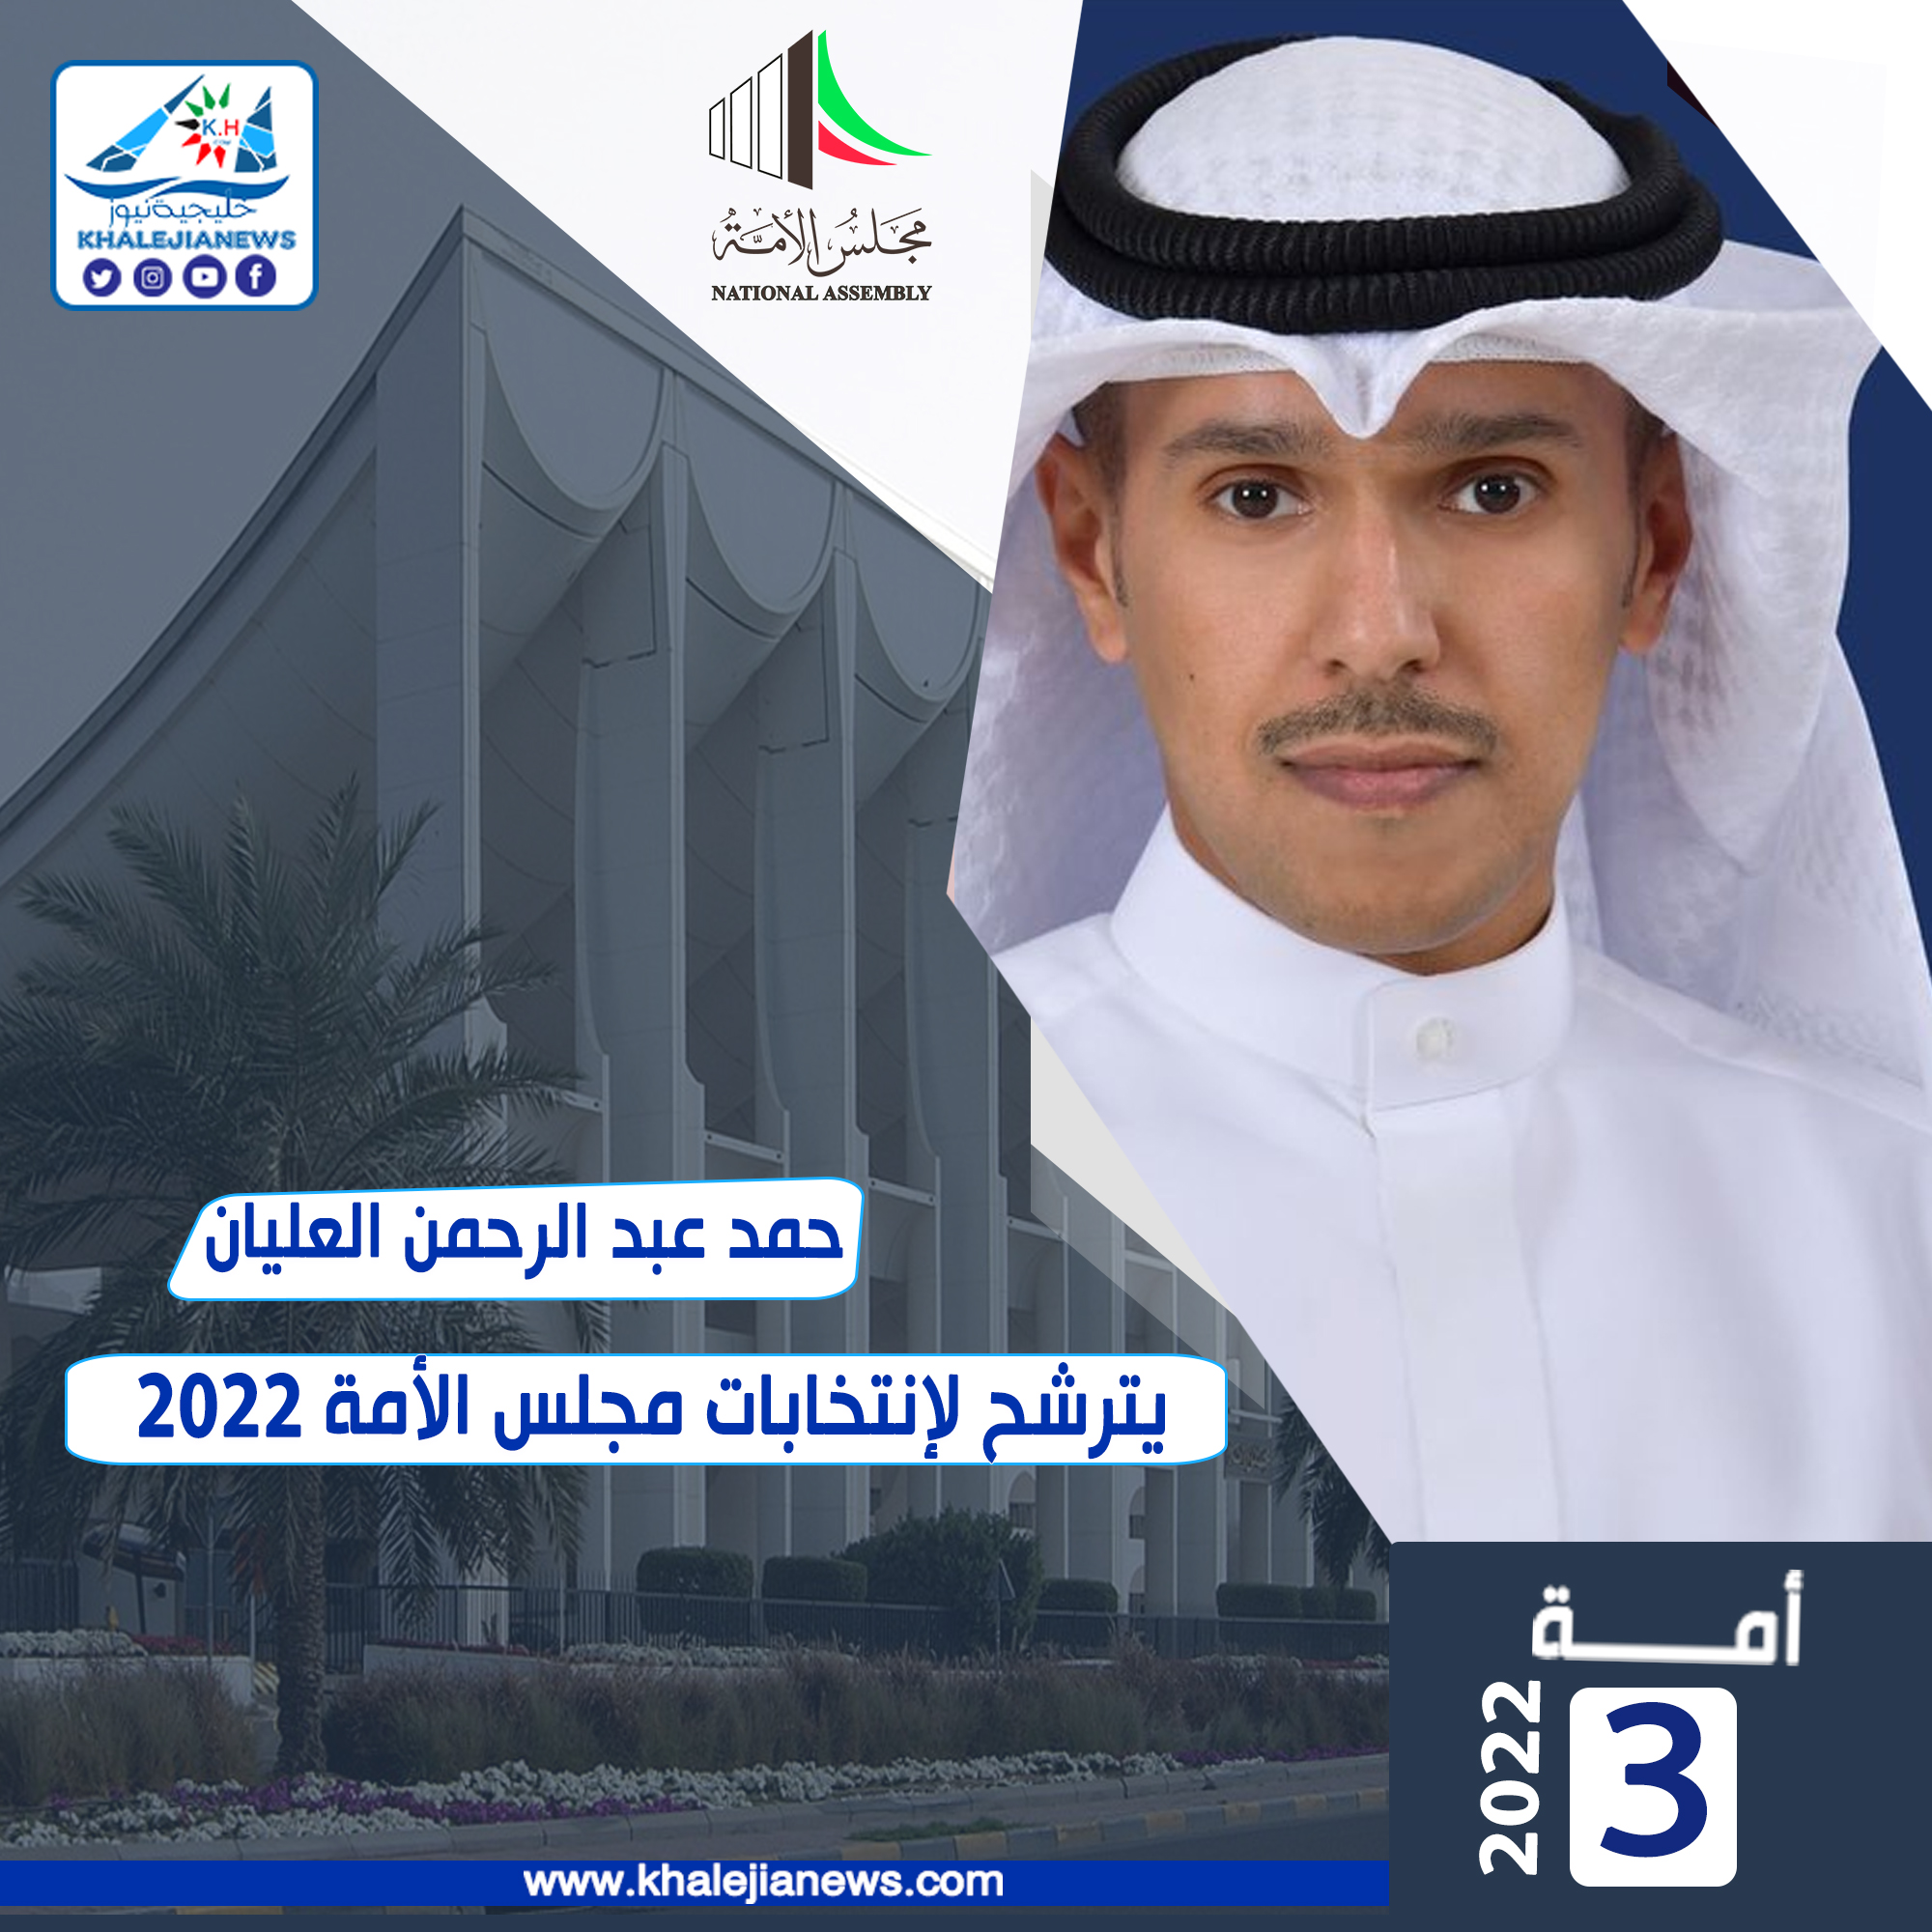 حمد عبد الرحمن العليان يترشح لإنتخابات مجلس الأمة 2022